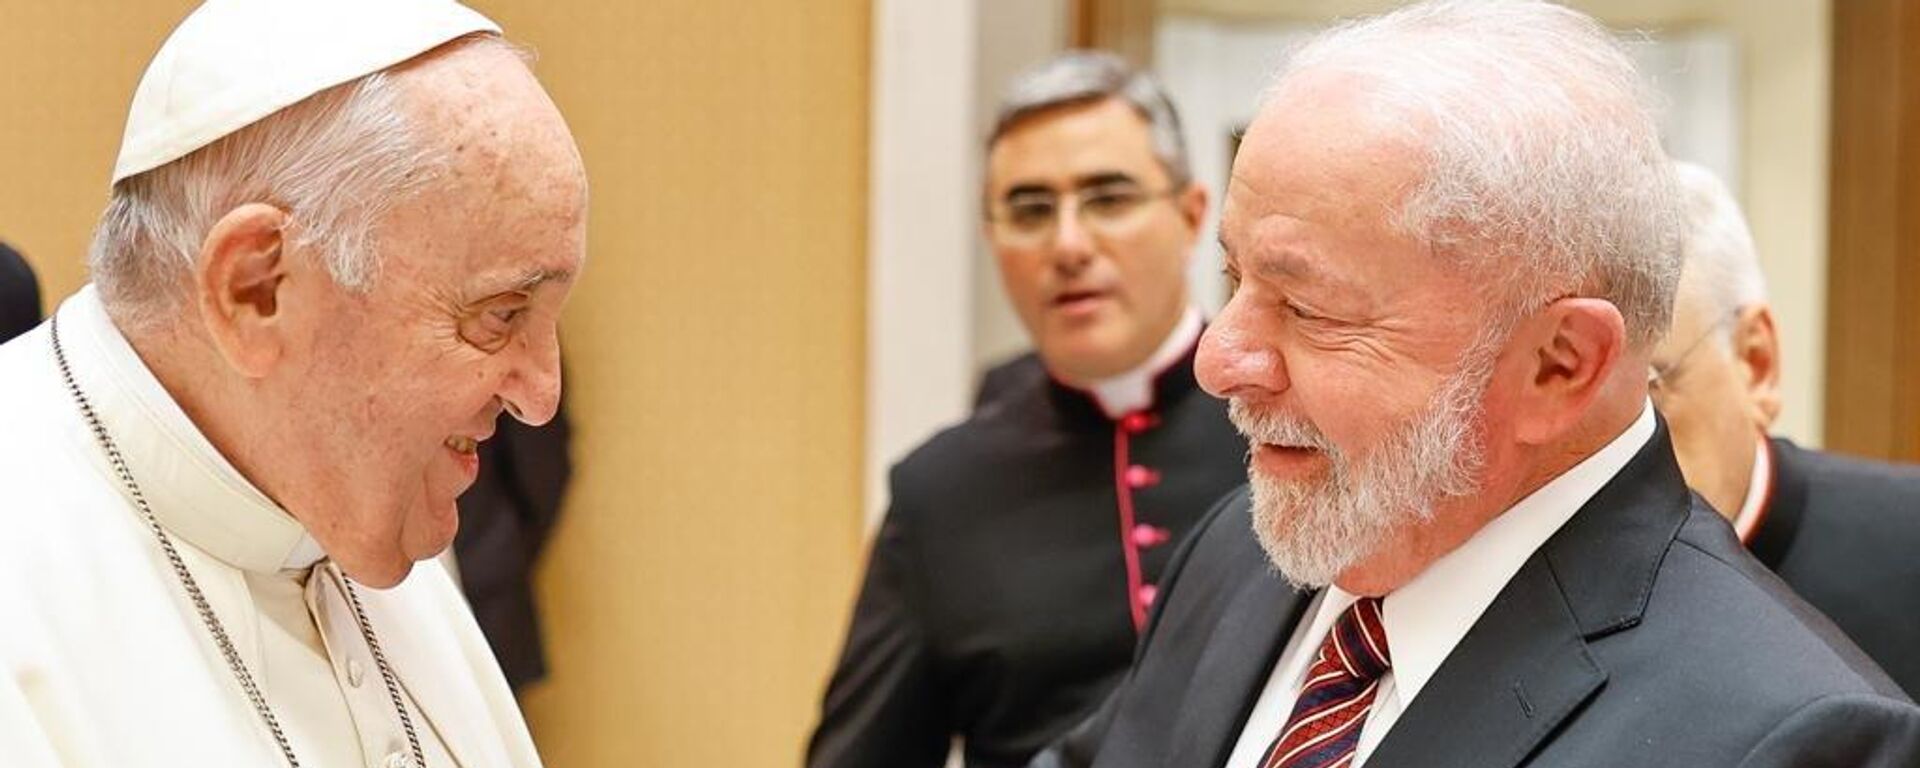 El presidente de Brasil, Lula da Silva, se reúne con el papa Francisco, el 21 de junio, 2023 - Sputnik Mundo, 1920, 21.06.2023